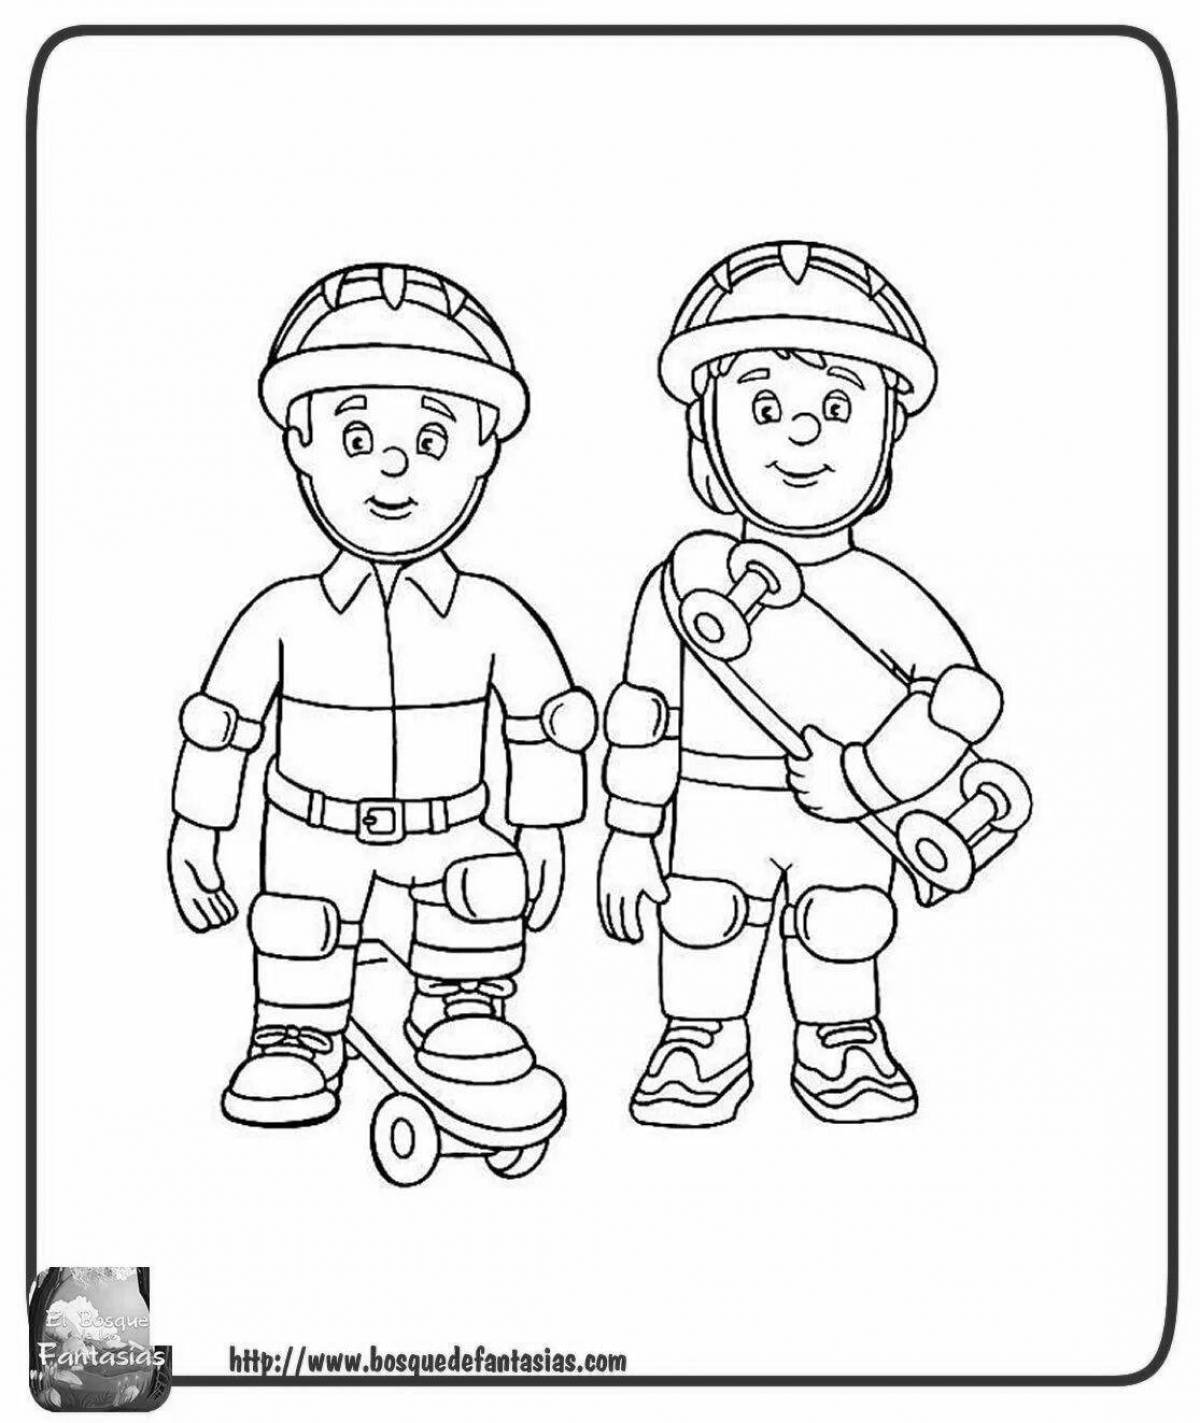 Fun coloring book fireman sam for kids